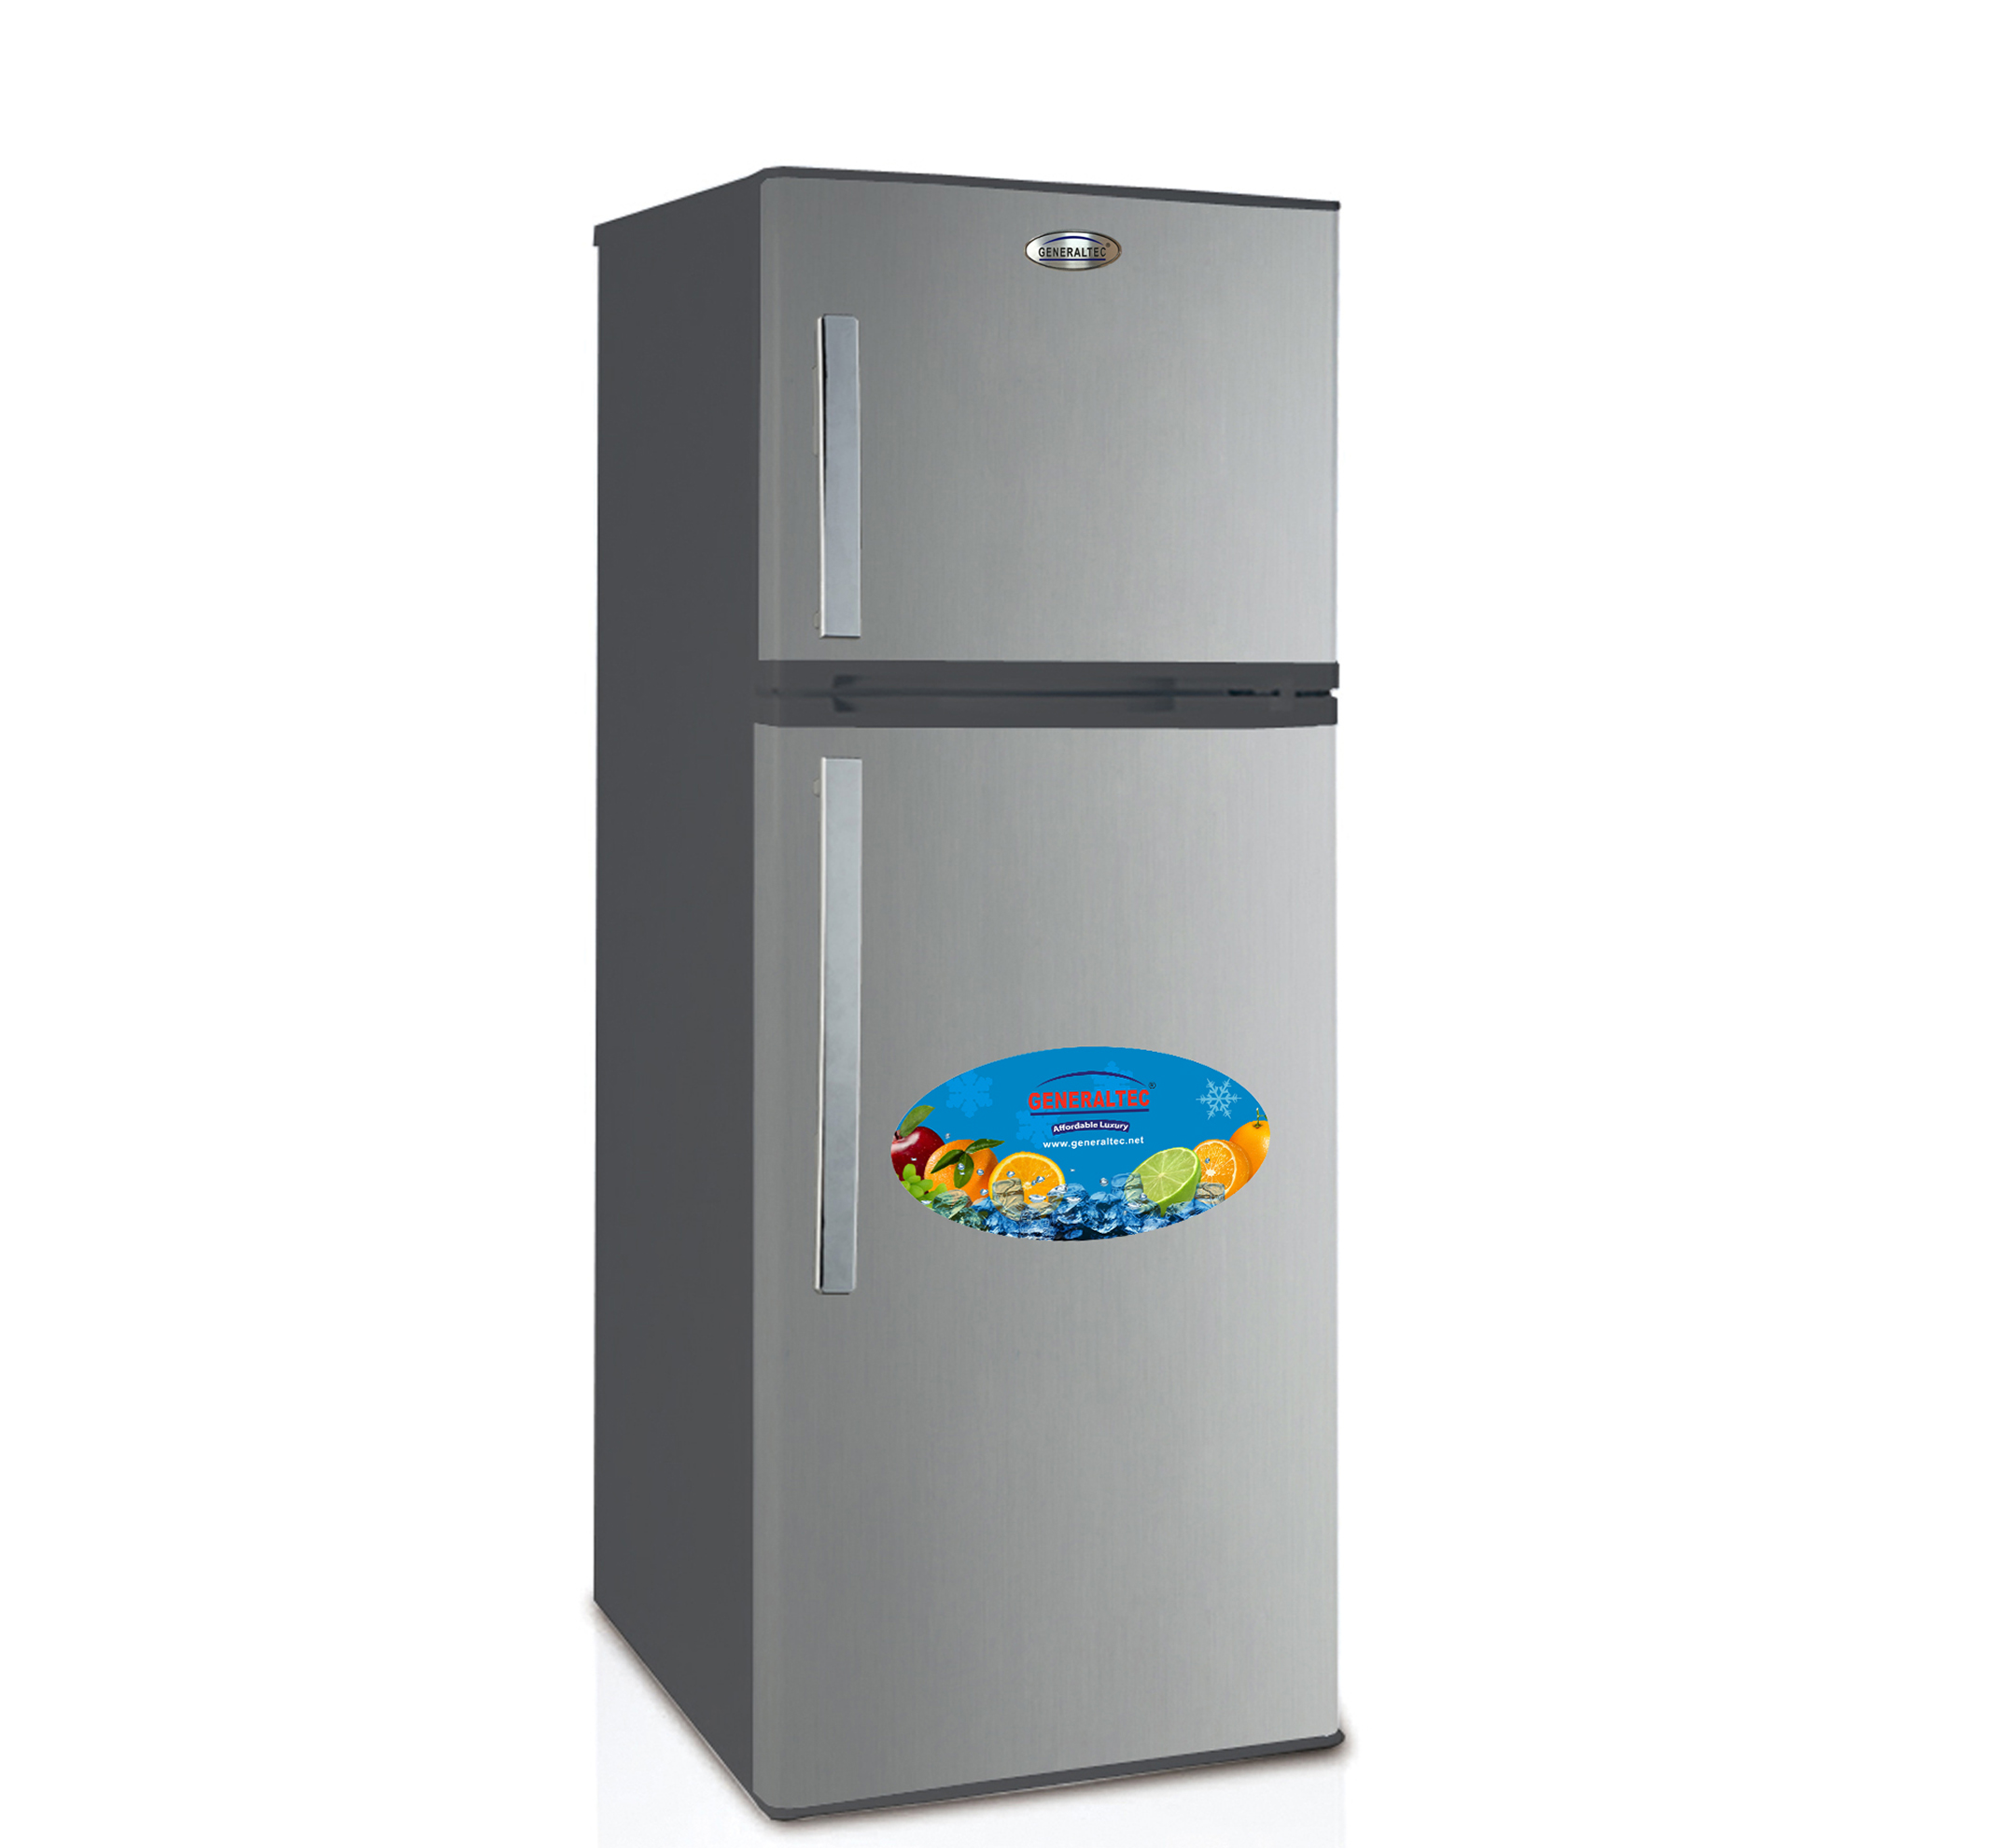 Refrigerator Double Door Model No. GR500SNF